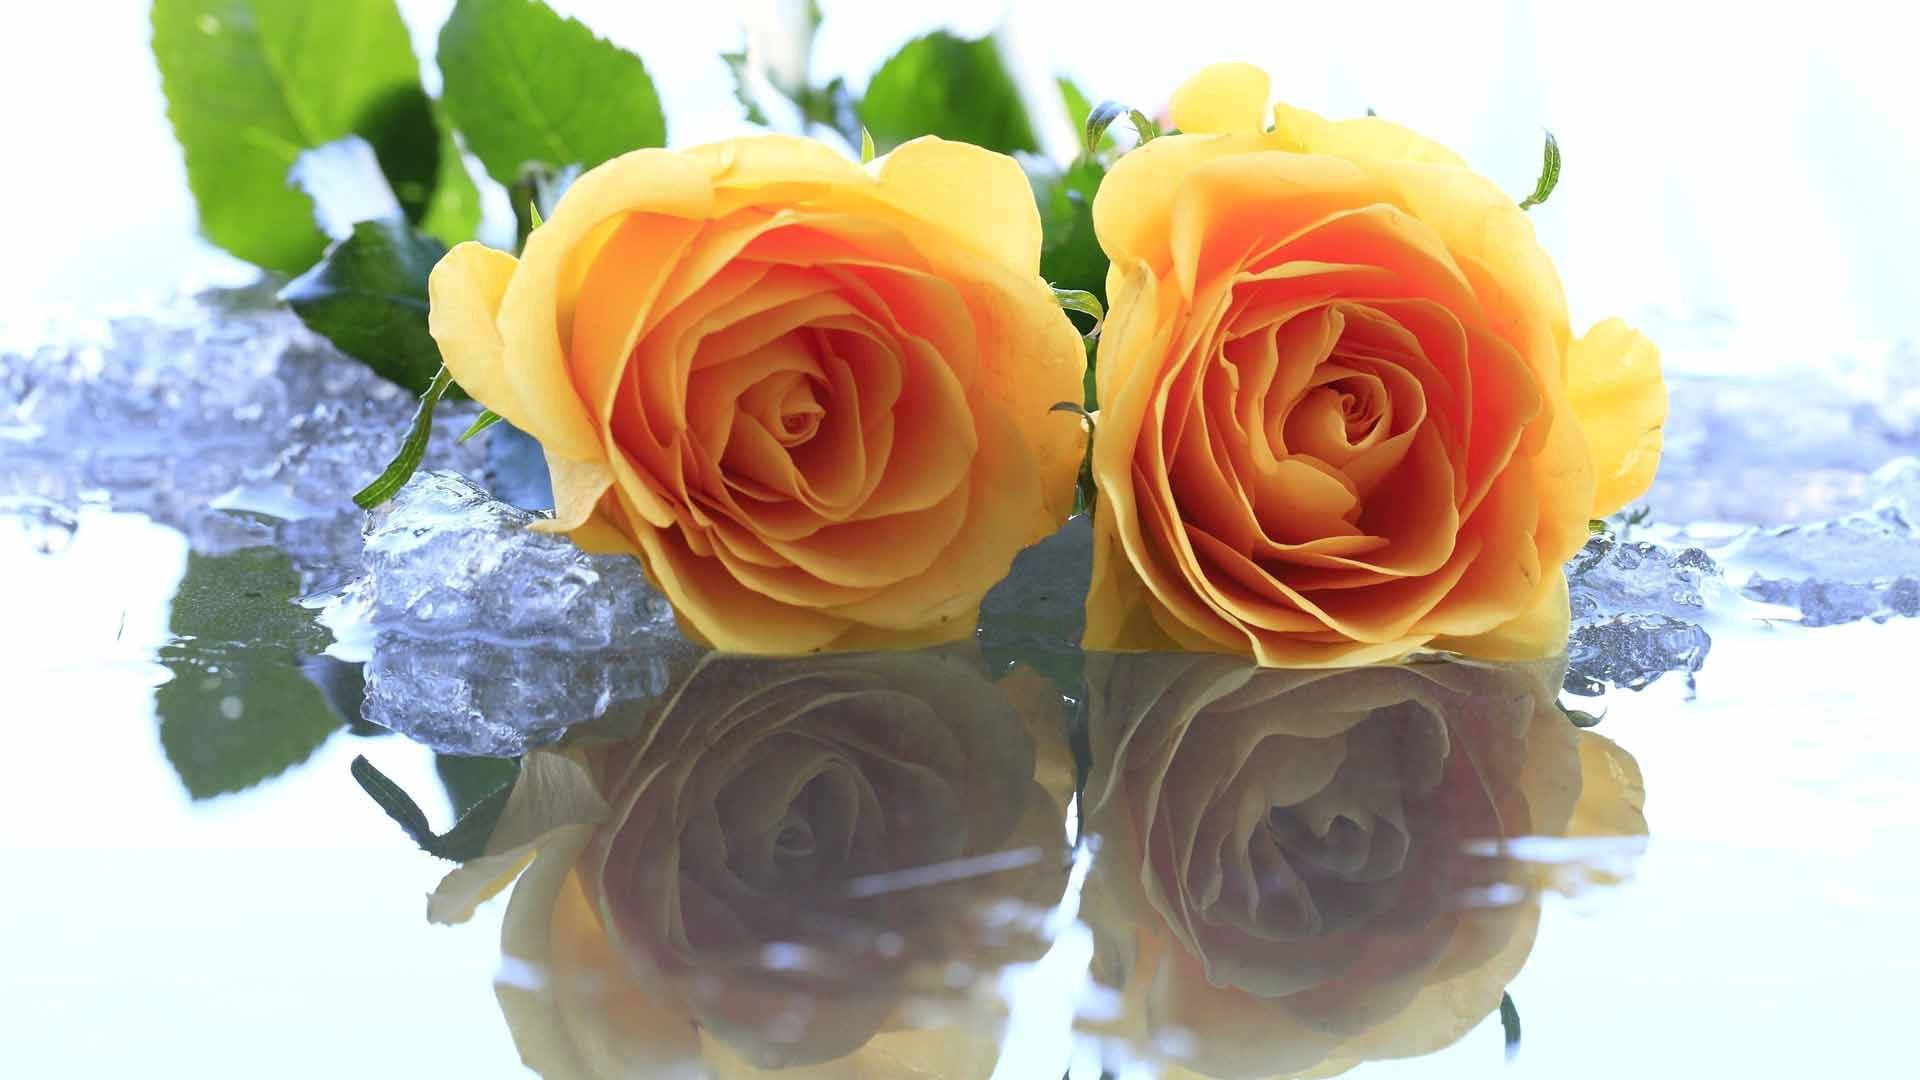 155422 Salvapantallas y fondos de pantalla Roses en tu teléfono. Descarga imágenes de hielo, amarillo, agua, flores gratis